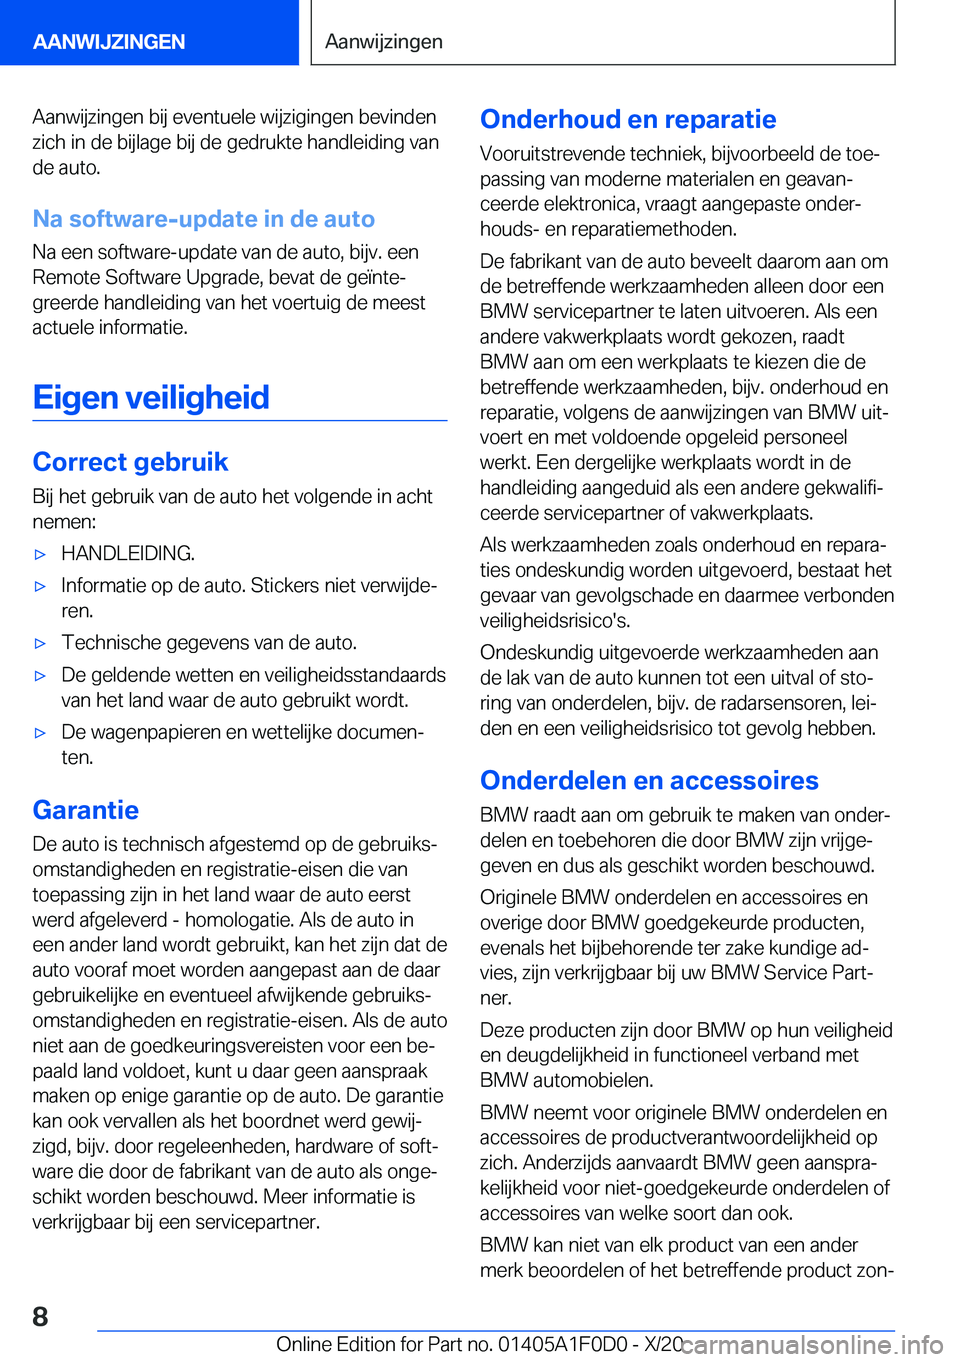 BMW X6 2021  Instructieboekjes (in Dutch) �A�a�n�w�i�j�z�i�n�g�e�n��b�i�j��e�v�e�n�t�u�e�l�e��w�i�j�z�i�g�i�n�g�e�n��b�e�v�i�n�d�e�n�z�i�c�h��i�n��d�e��b�i�j�l�a�g�e��b�i�j��d�e��g�e�d�r�u�k�t�e��h�a�n�d�l�e�i�d�i�n�g��v�a�n
�d�e�